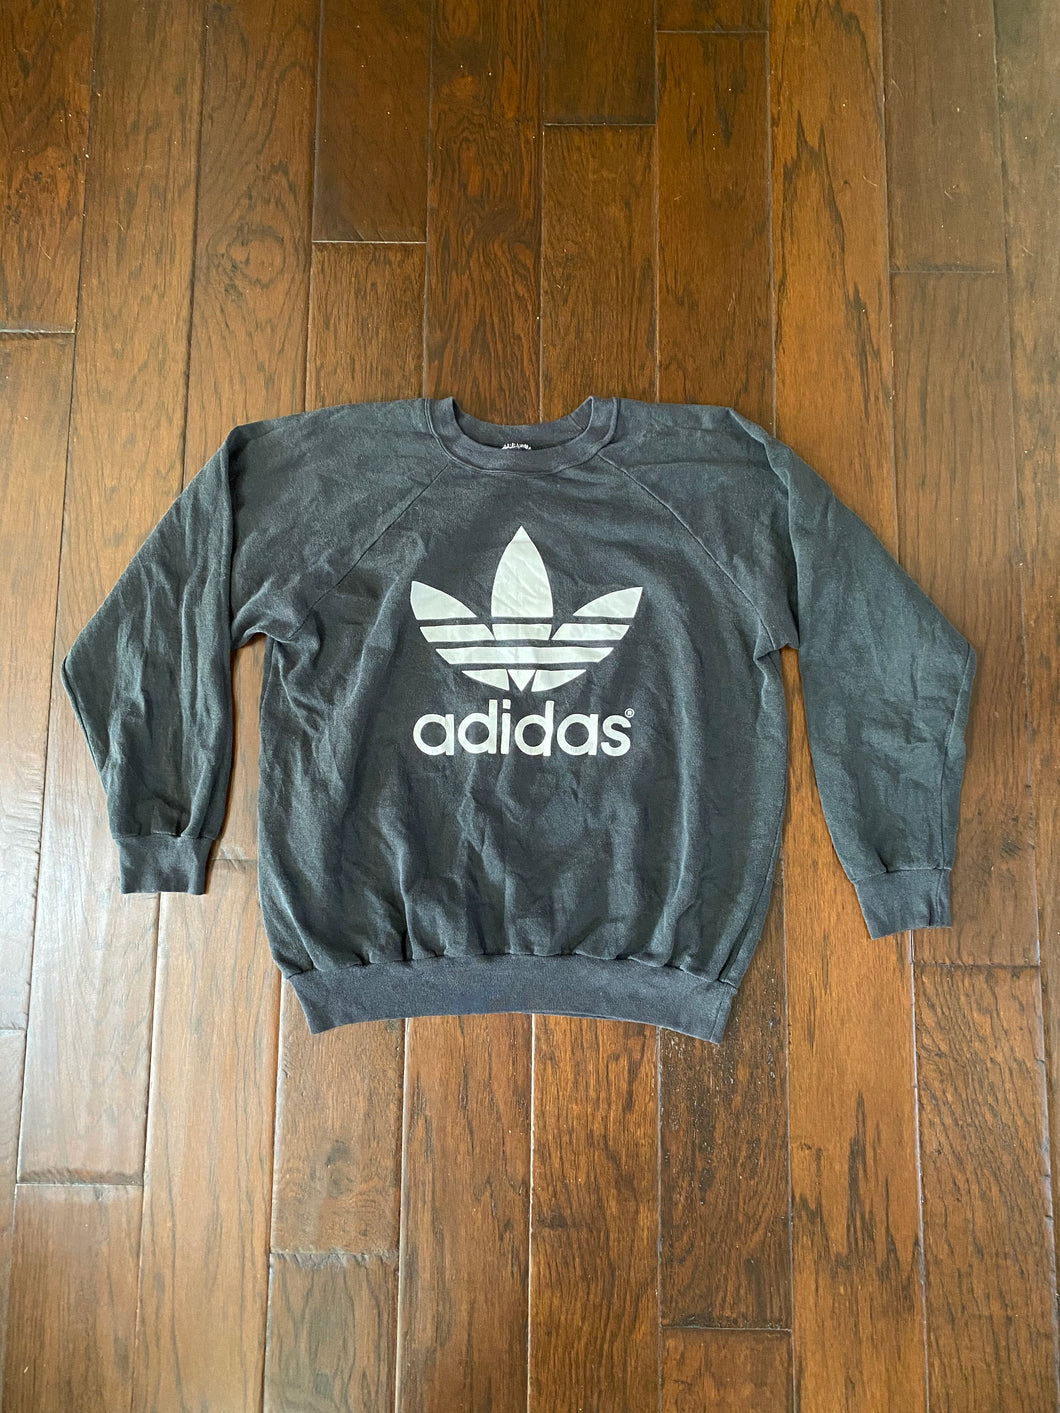 Vintage Adidas 1990’s Distressed Sweatshirt